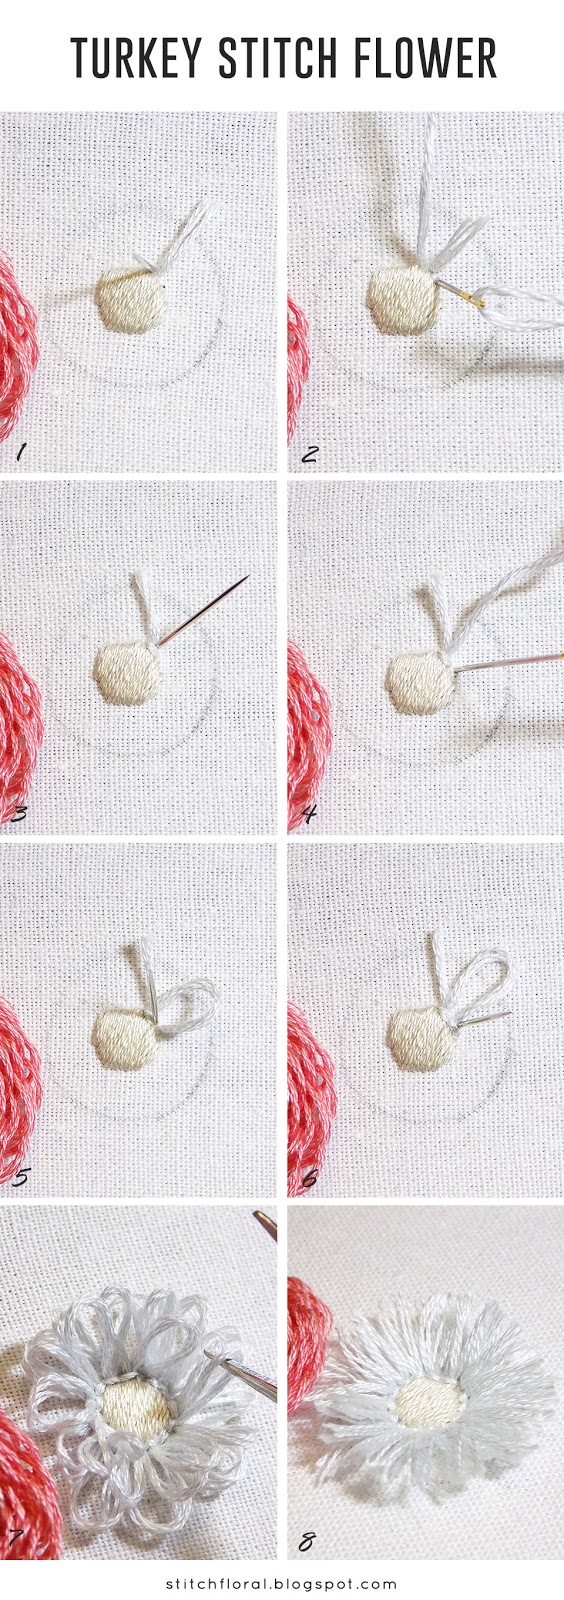 turkey stitch flower tutorial